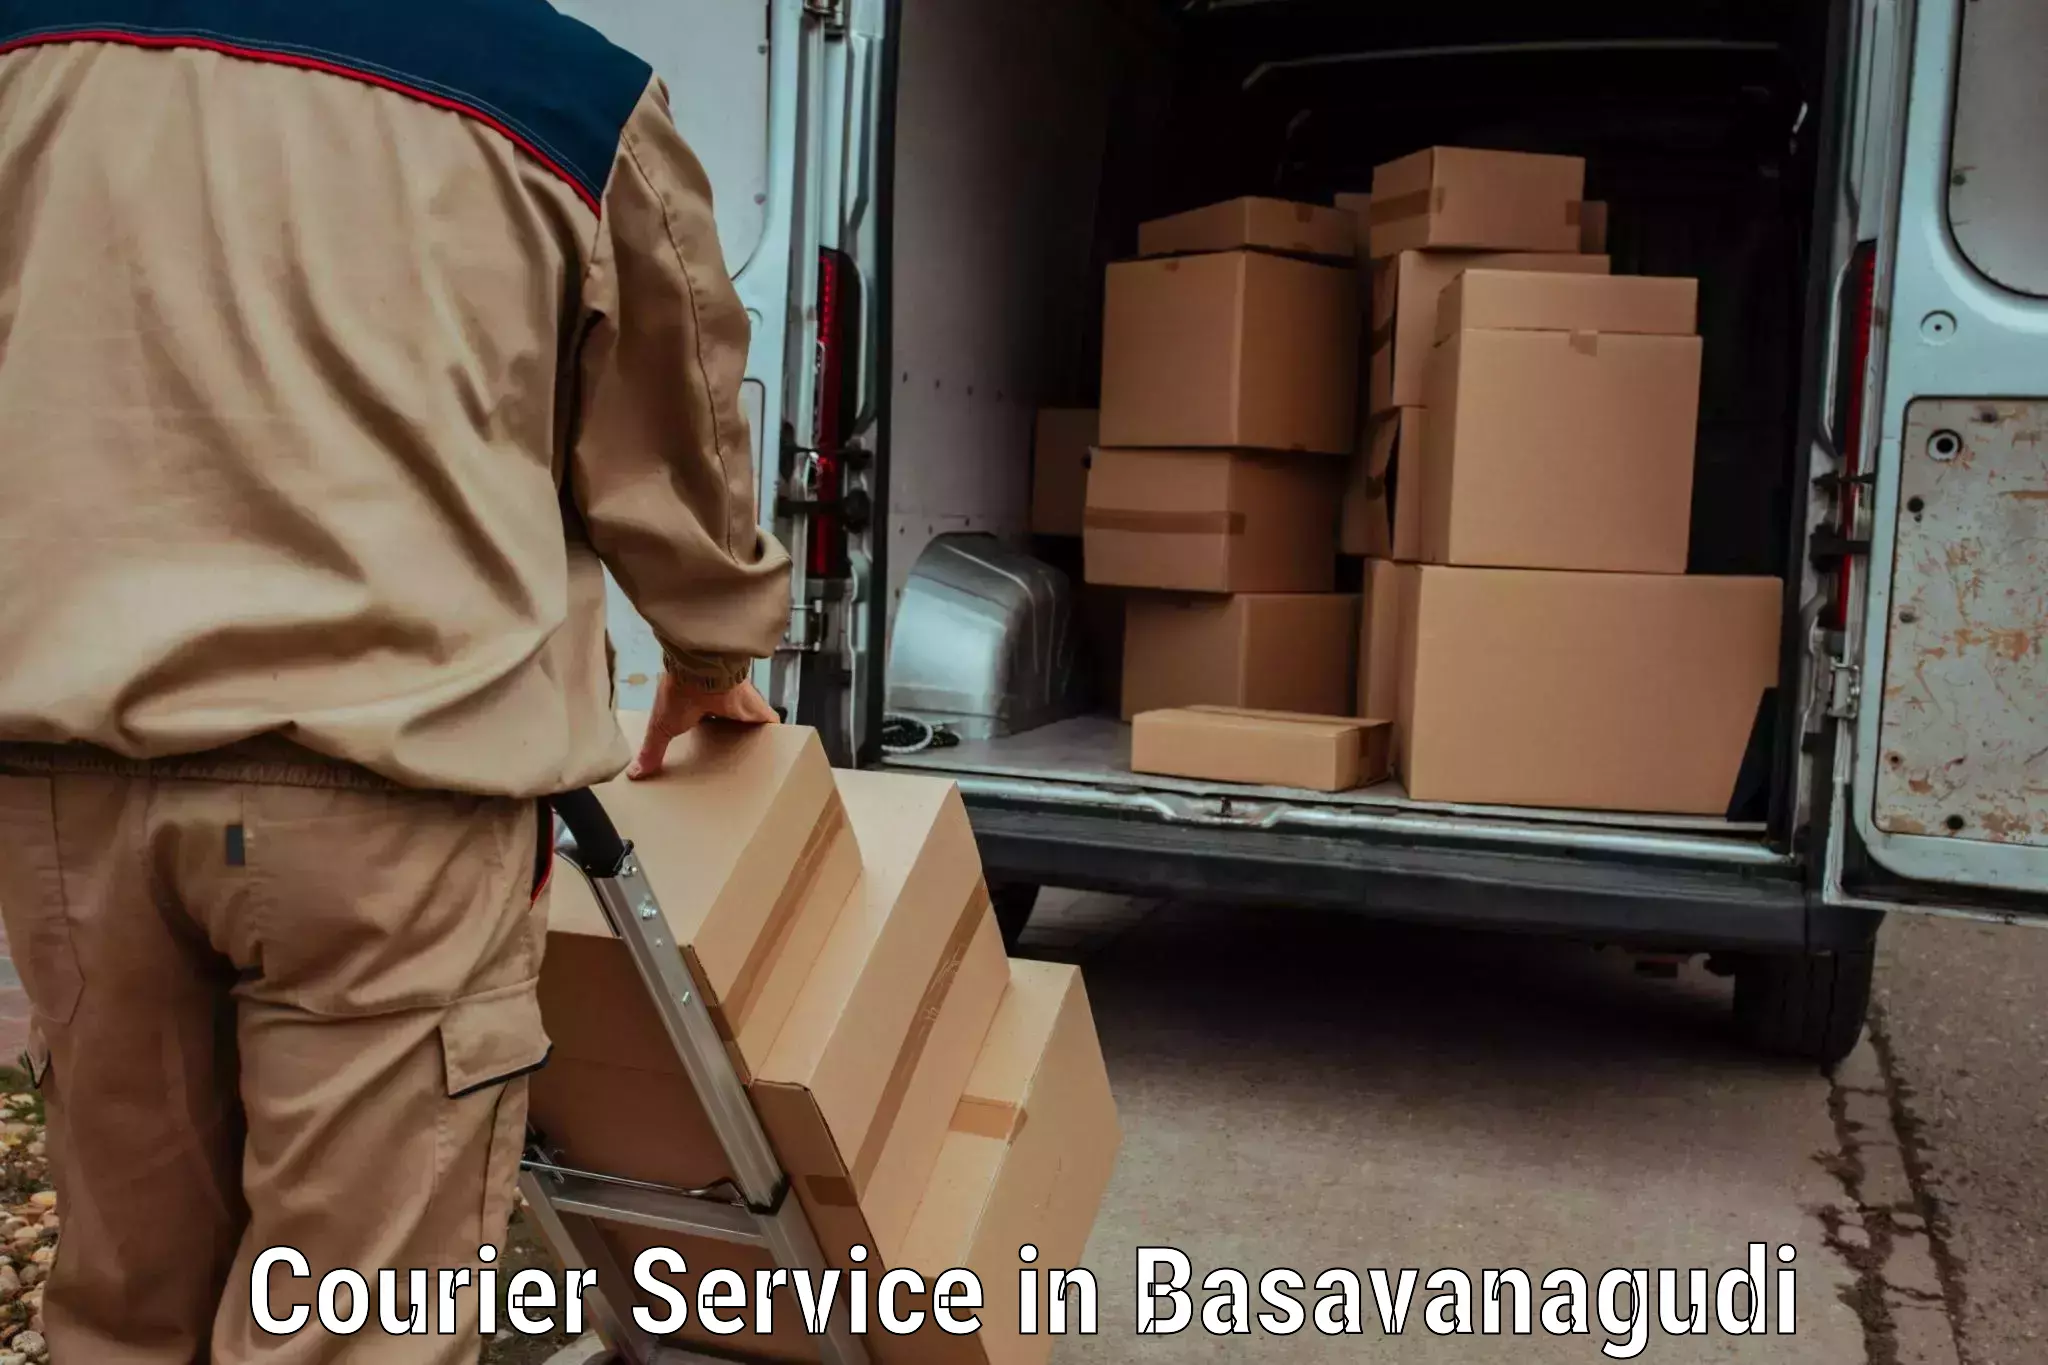 Cost-effective courier options in Basavanagudi